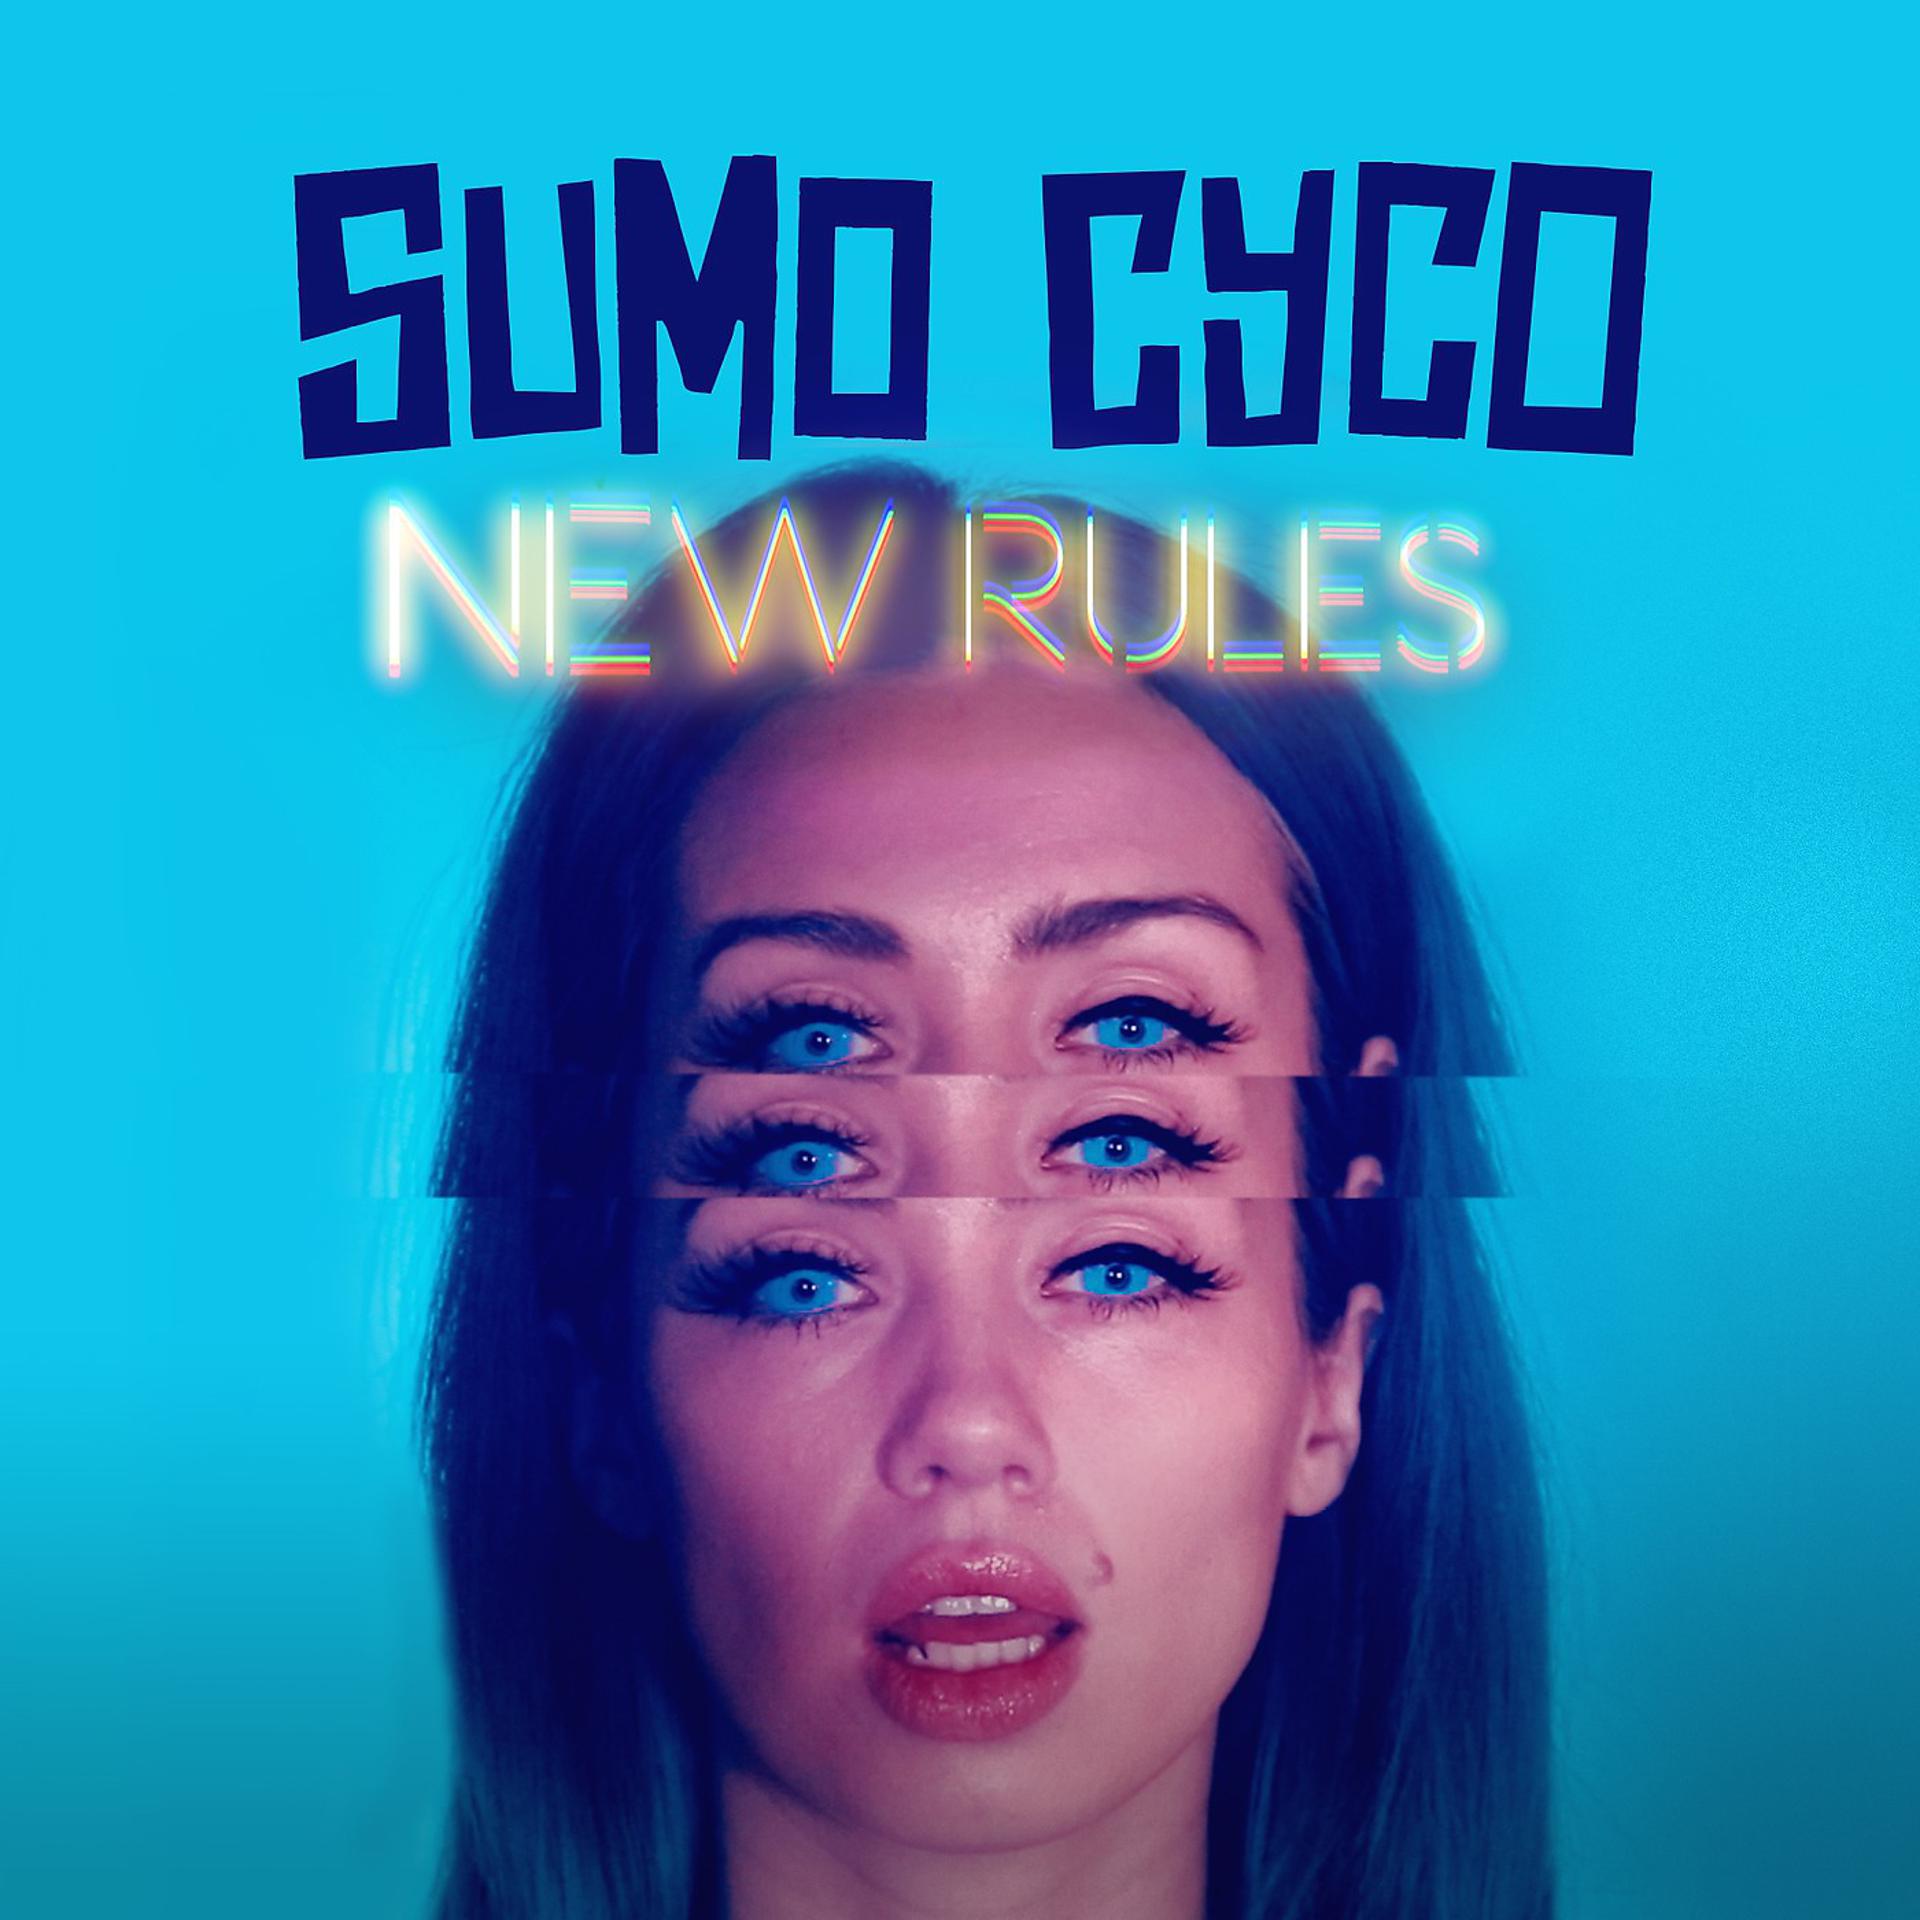 Исполнительница new rules. Sumo Cyco. Скай Суитнем Sumo Cyco. The New Rules. Песня New Rules.